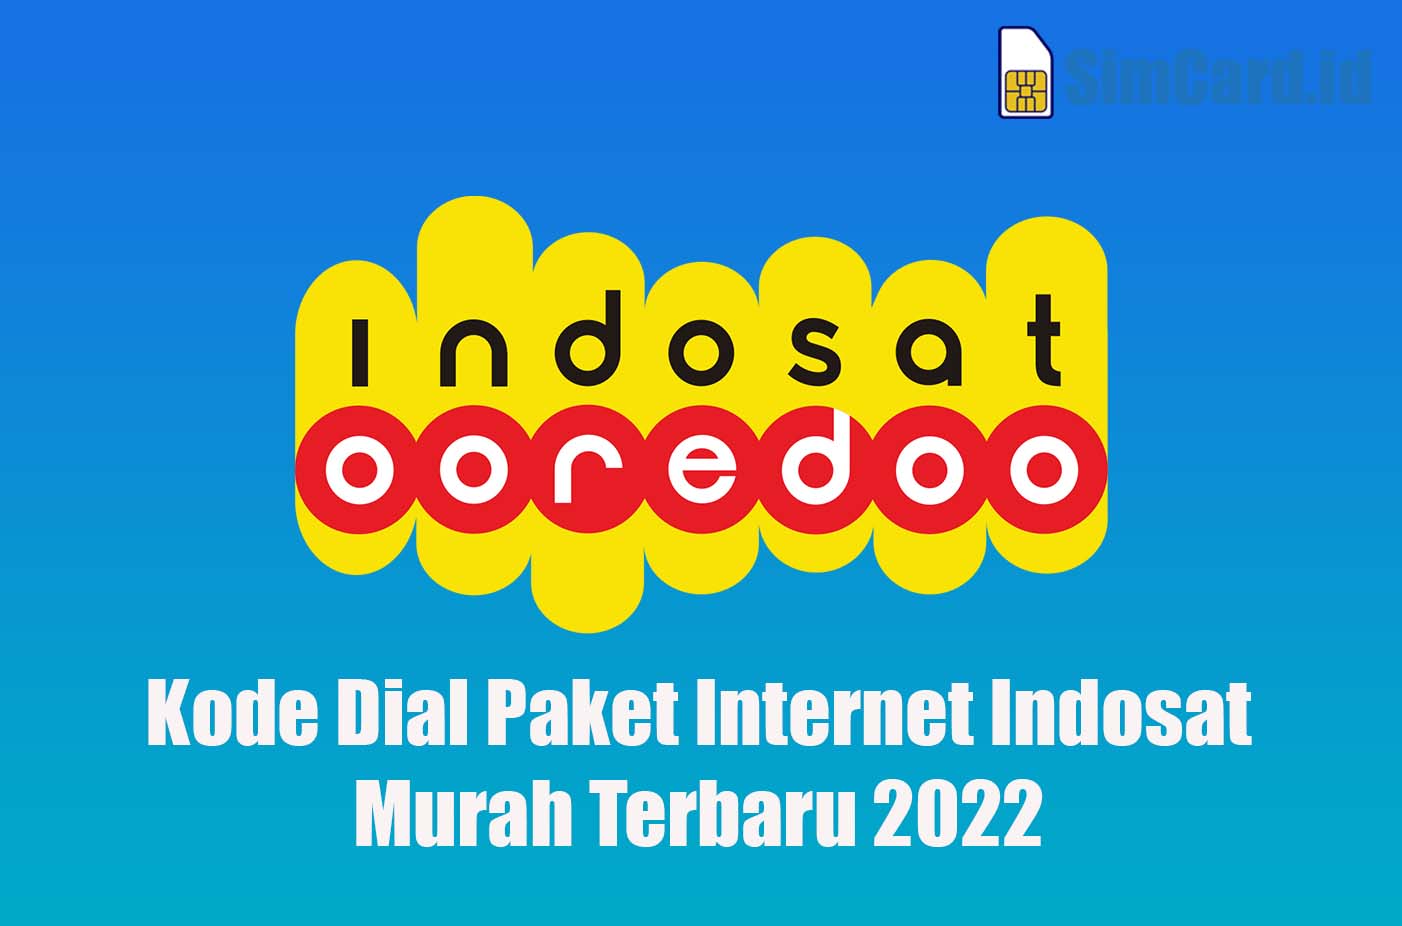 Kode Dial Paket Internet Indosat Murah Terbaru 2022